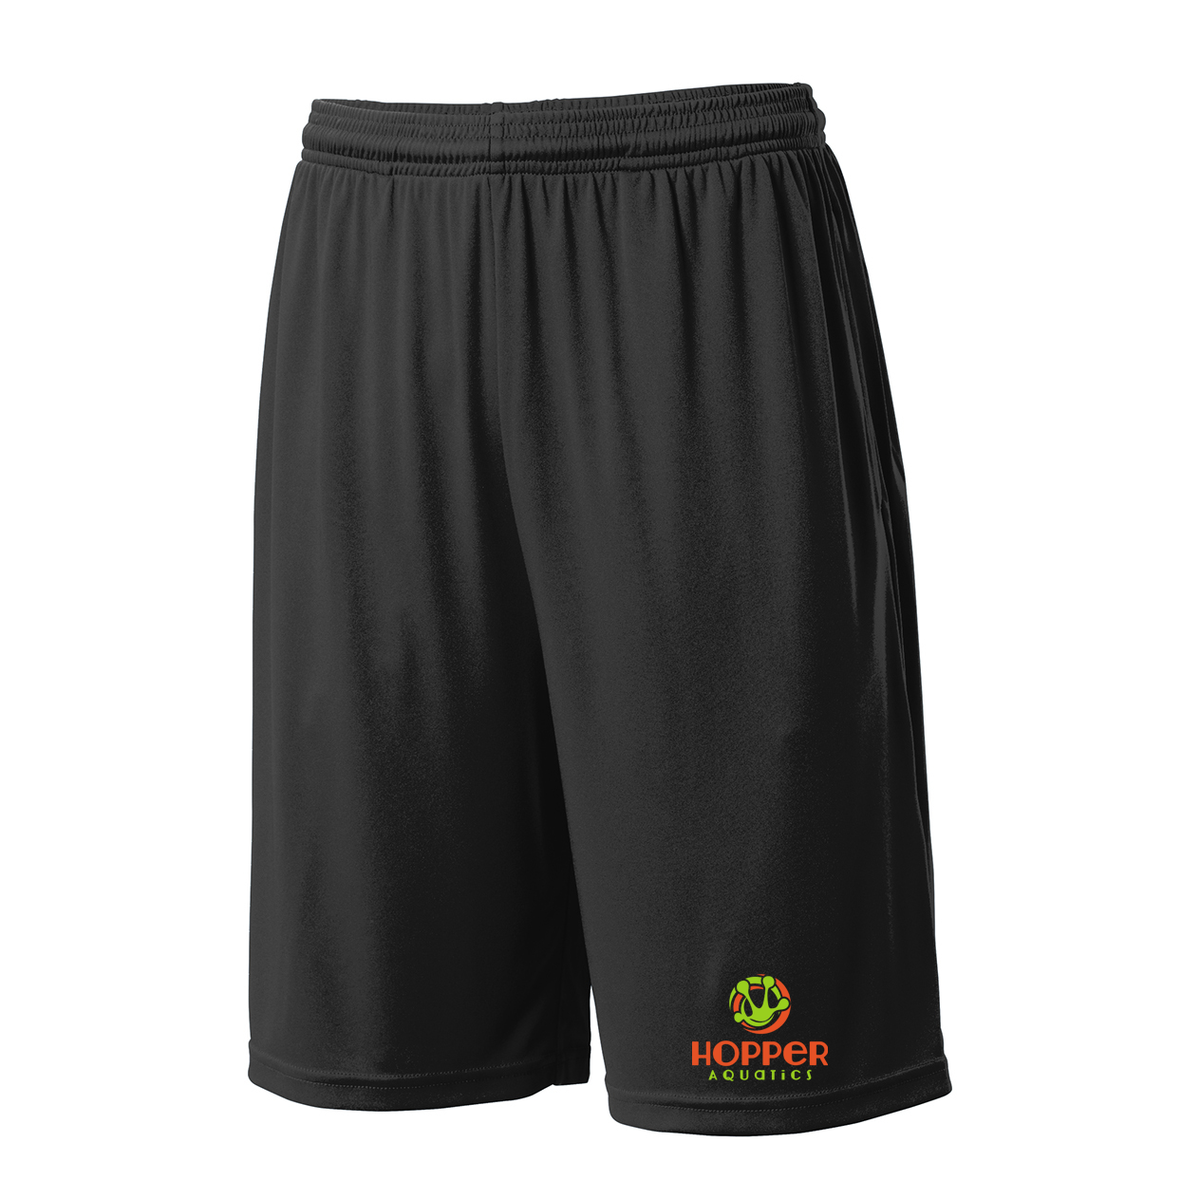 Hopper Aquatics Shorts